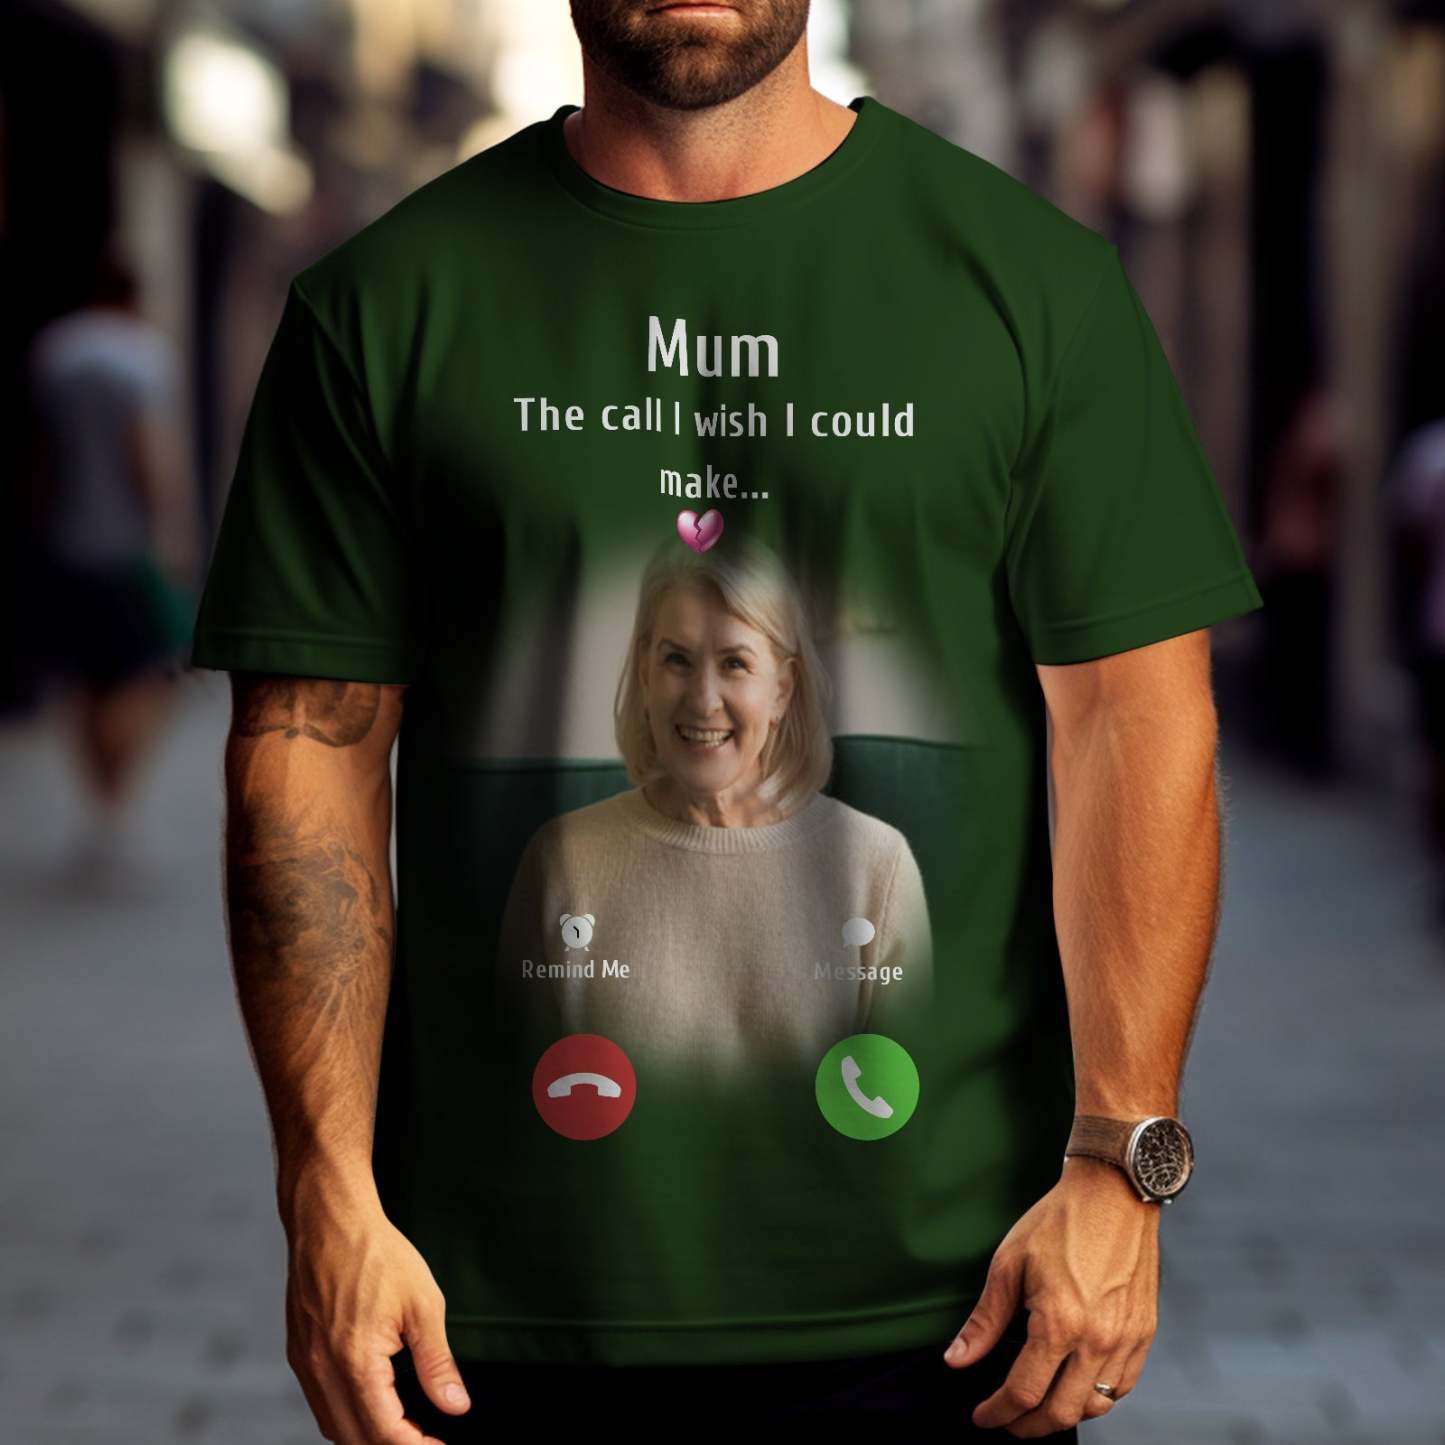 Photo Personnalisée Memorial Mom T-shirt Memorial Gift Idea Chemise Personnalisée L'appel Que J'aimerais Pouvoir Faire - VisageChaussettes